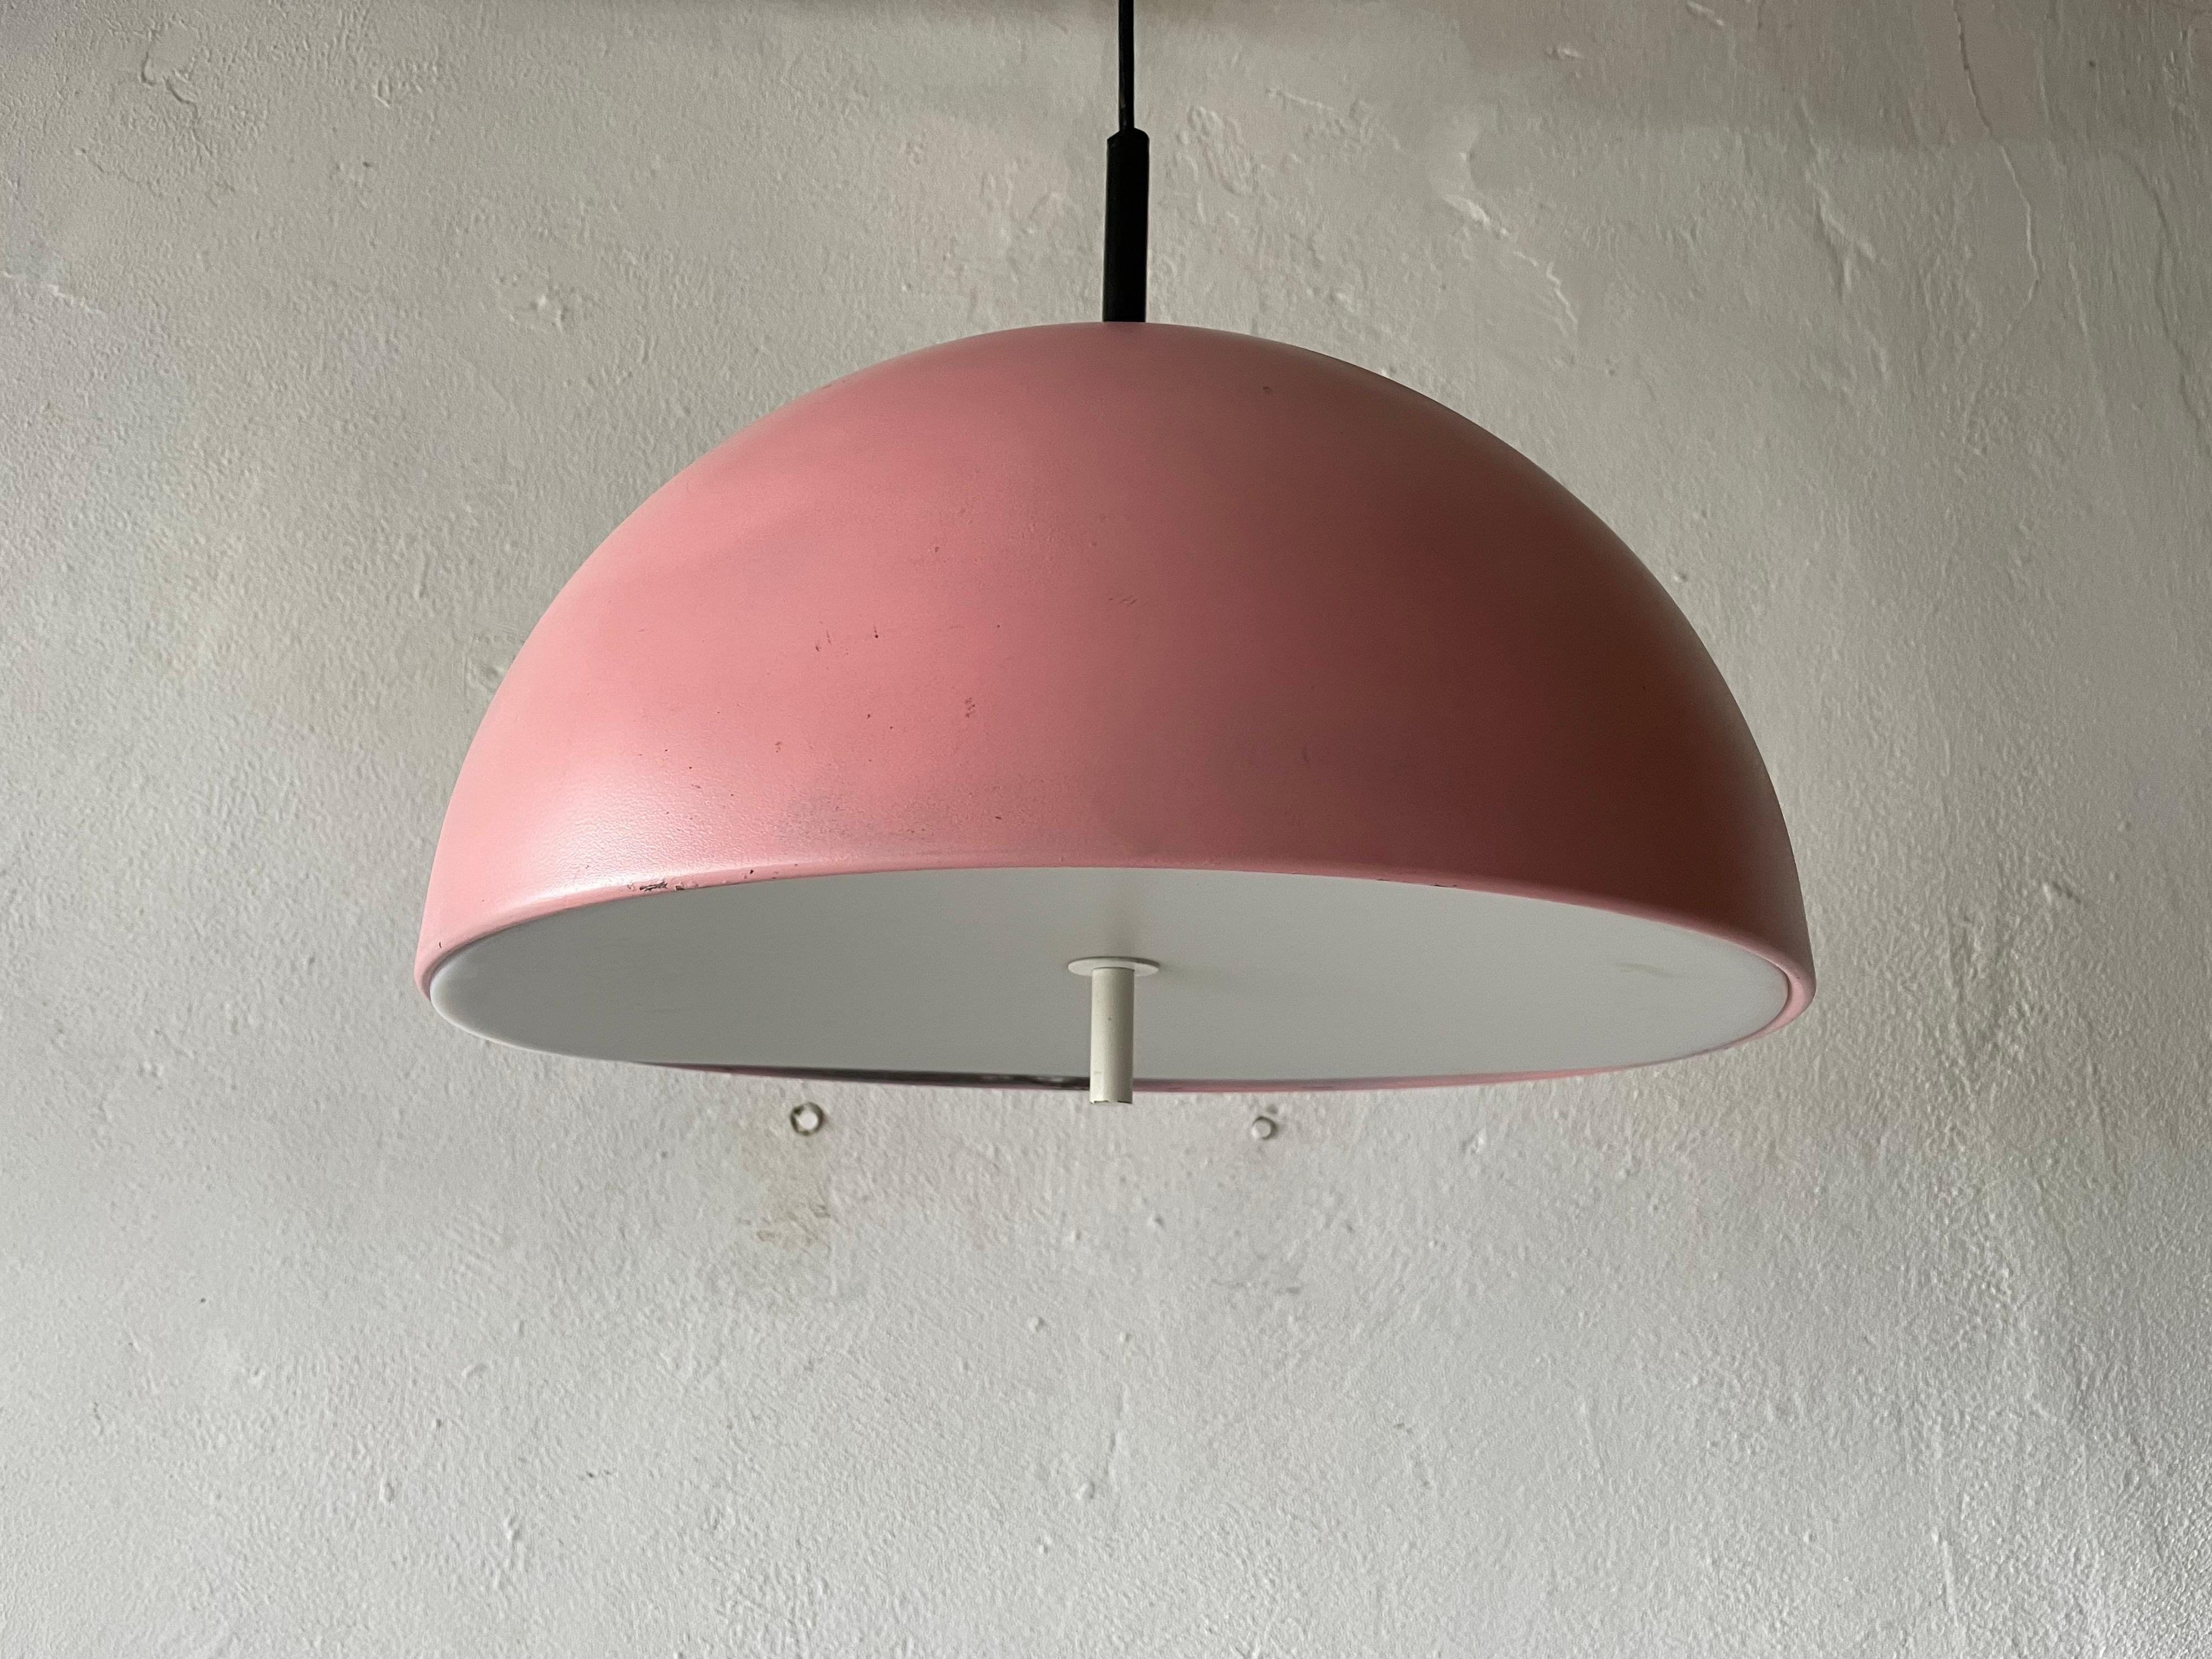 Rare lampe suspendue en métal rose par Staff, 1970, Allemagne

L'abat-jour est en très bon état vintage.

Cette lampe fonctionne avec 2xE27 ampoules. 
Câblé et adapté à une utilisation avec 220V et 110V pour tous les pays.

Mesures :
Hauteur